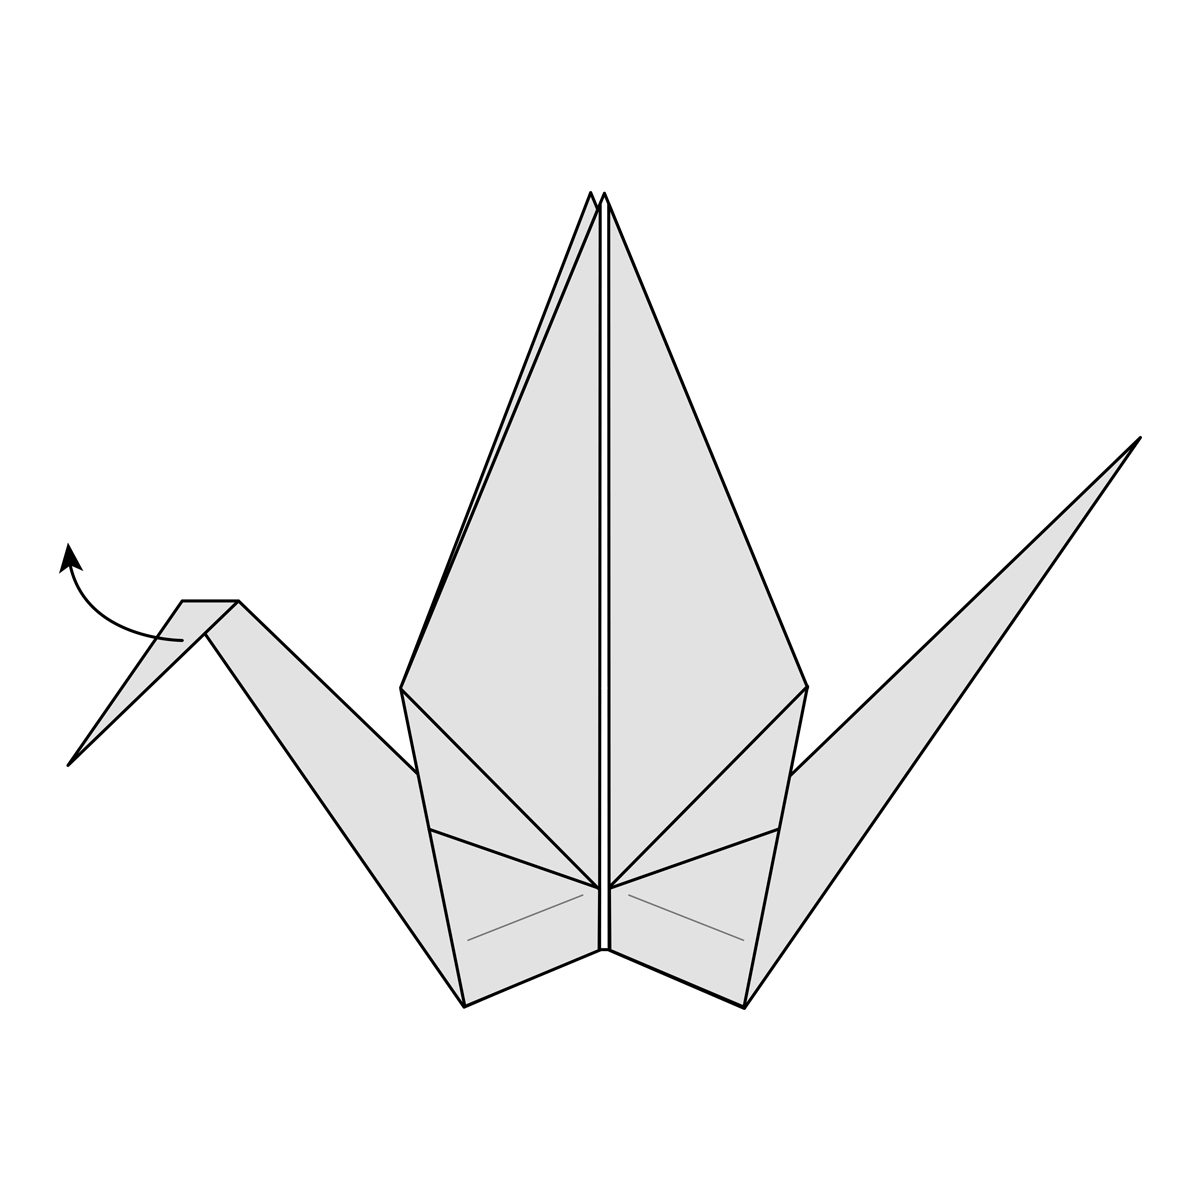 How To Make A Crane Origami Origami Crane How To Fold A Traditional Paper Crane